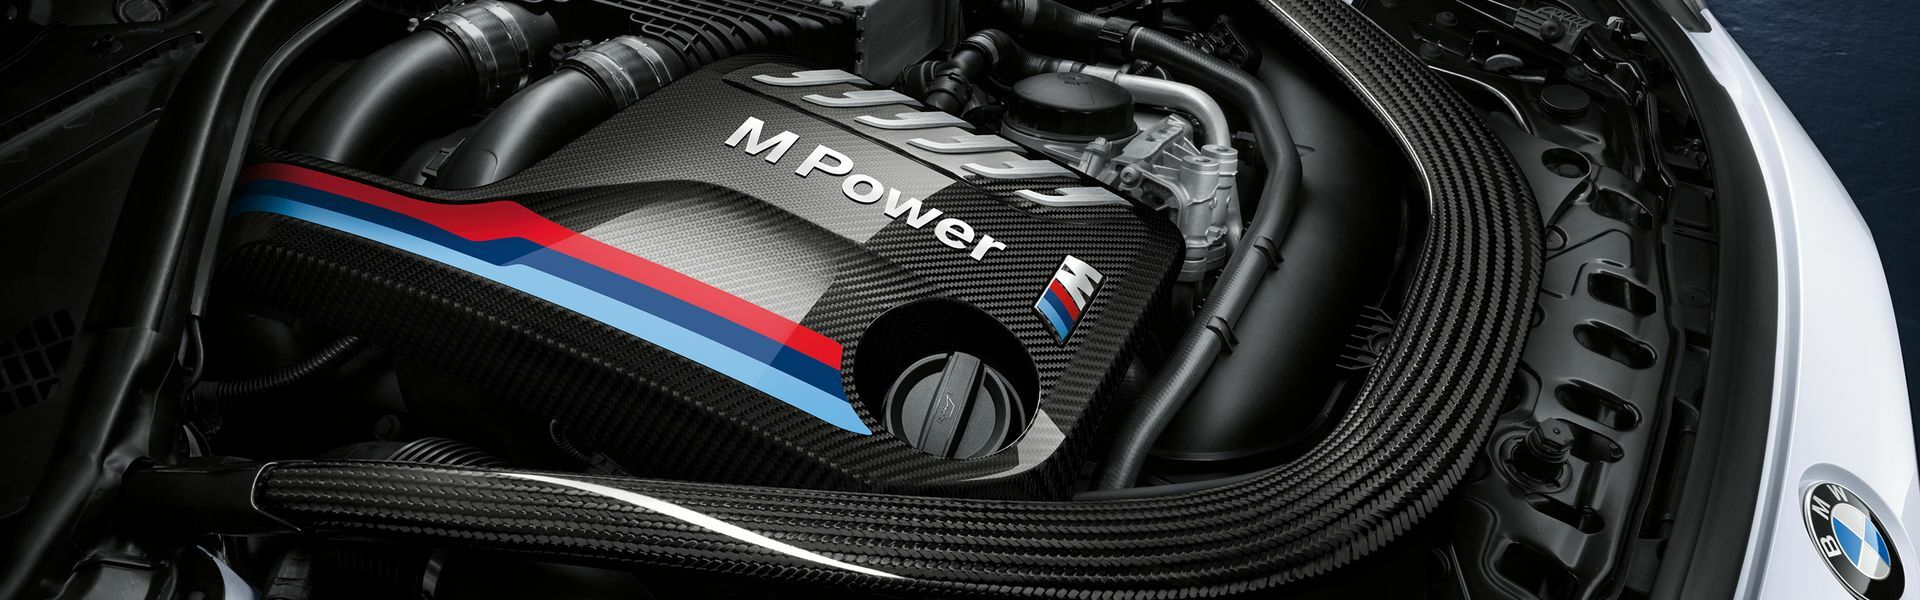 Zvýšení výkonu/ Softwarové úpravy/ Drobné performance díly pro automobil Porsche 911 GT3 RS 991